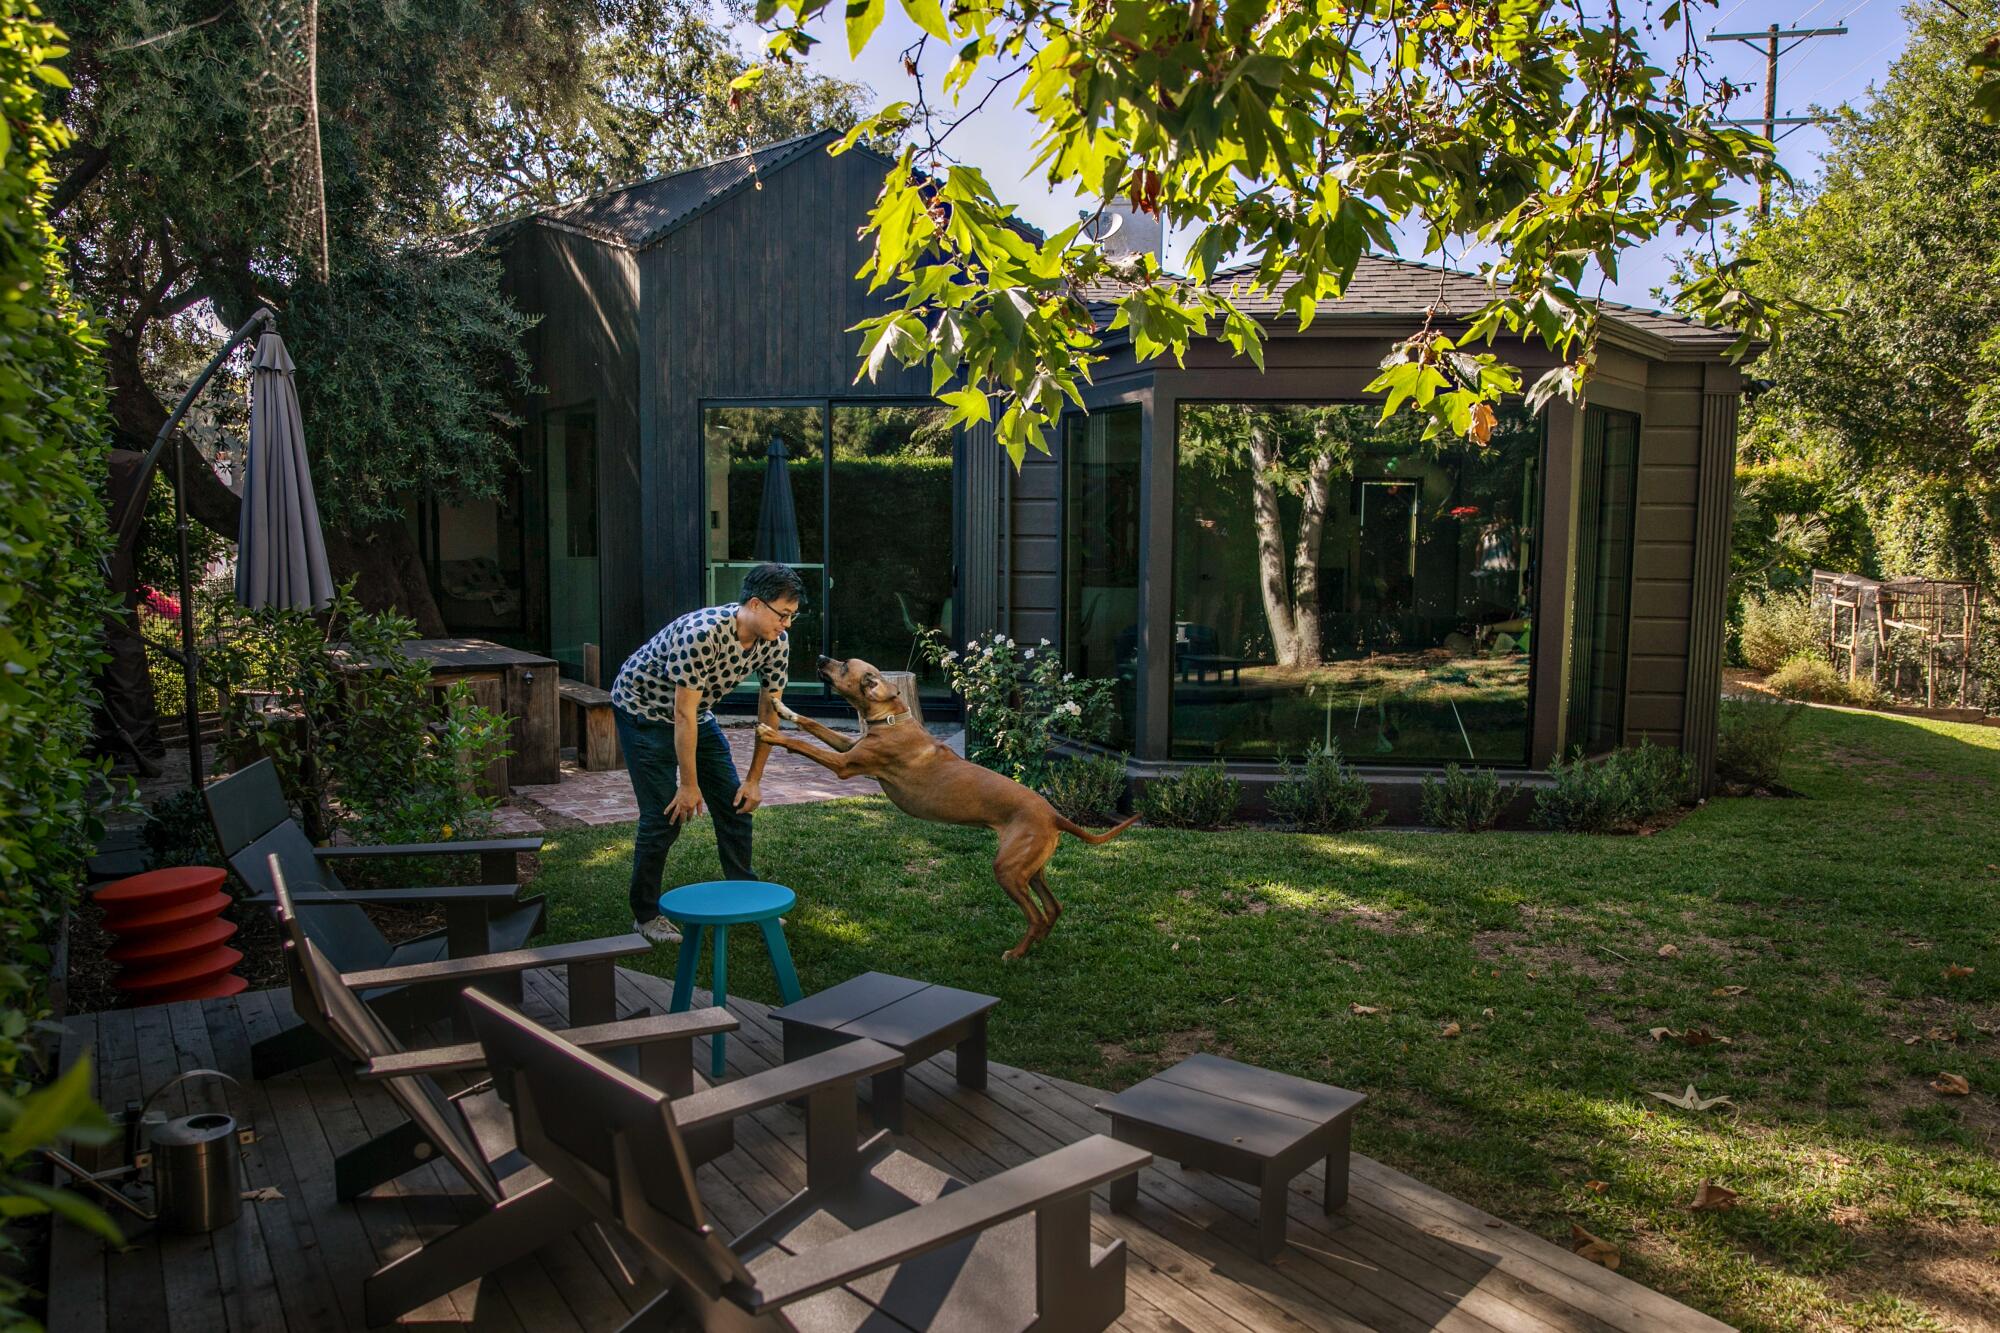 Ein Mann spielt mit einem Hund in einem Hinterhof.